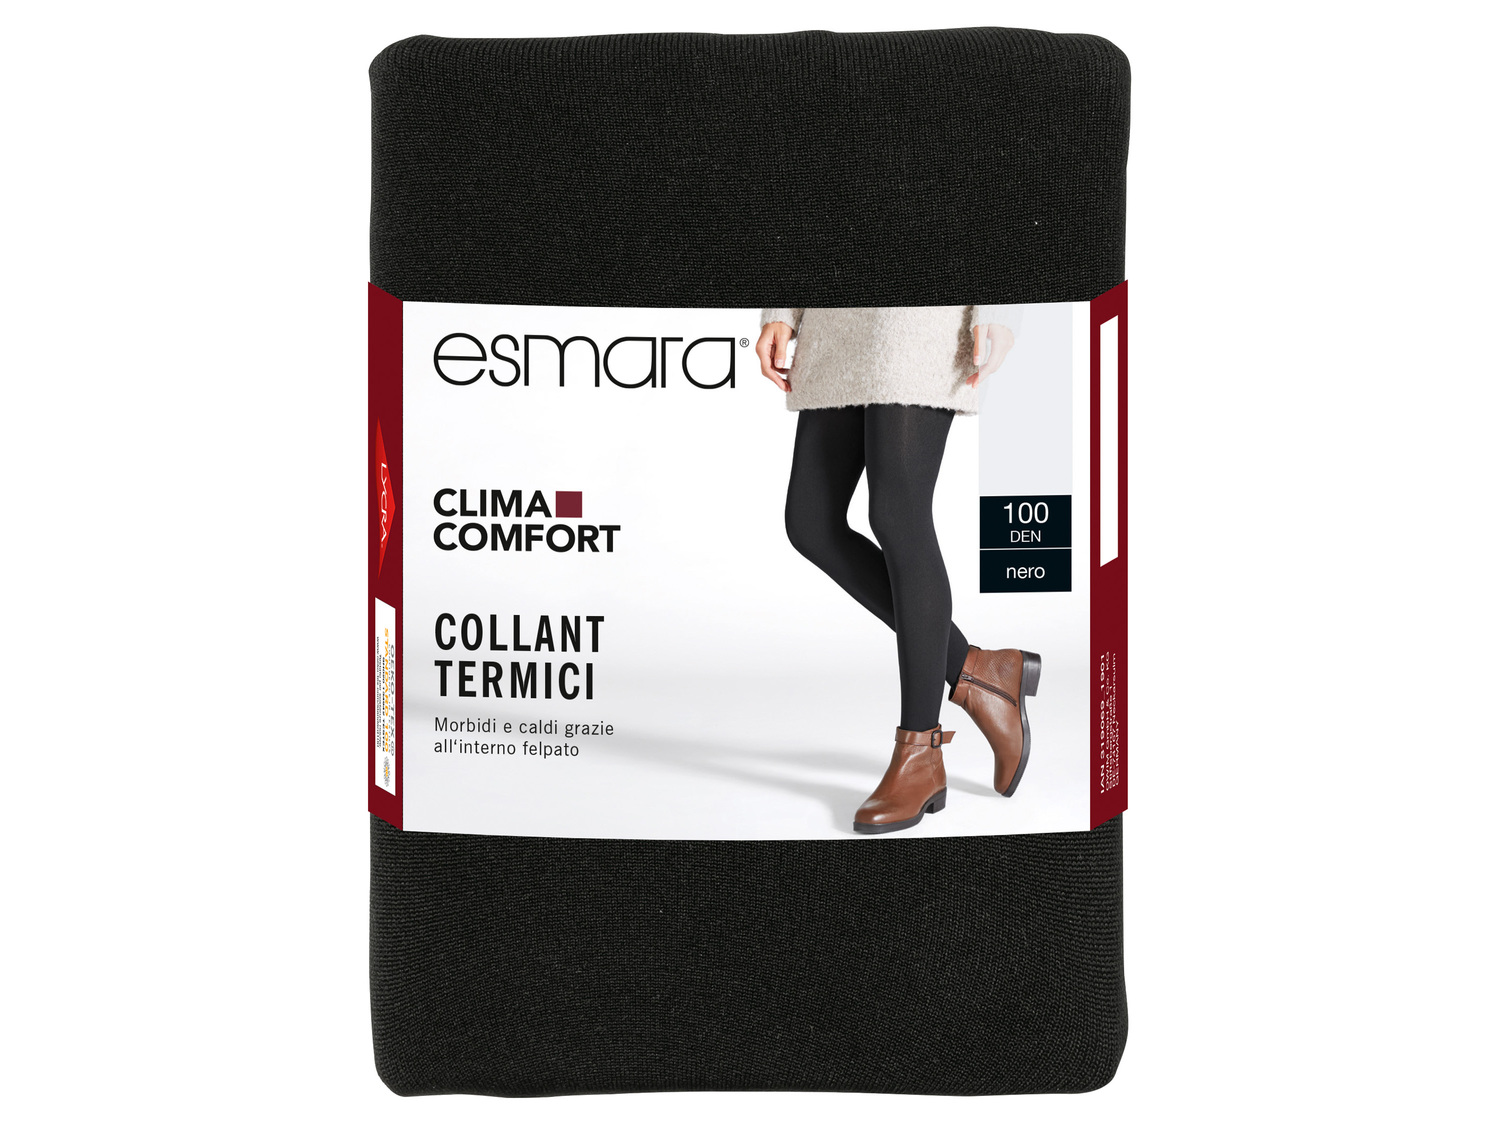 Collant o leggings termici da donna 100 DEN Esmara, le prix 3.99 &#8364; 
Misure: ...